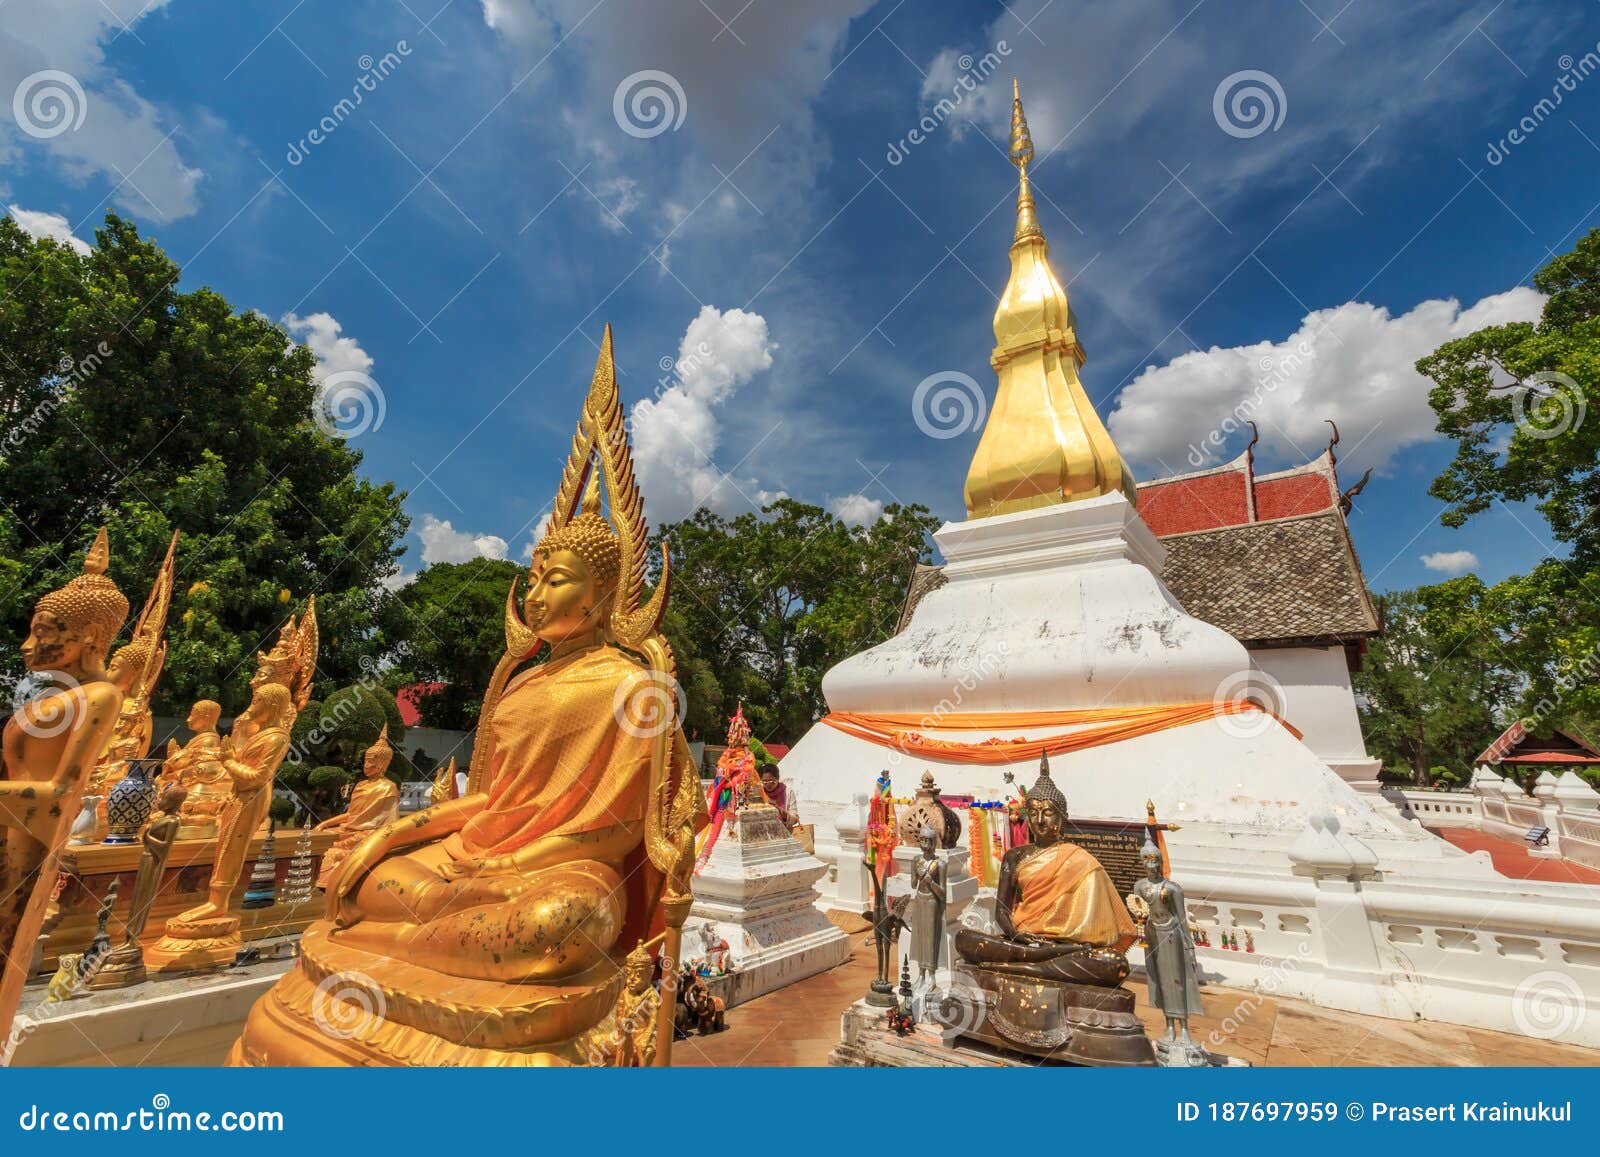 golden pagoda in phra that kham kaen, khon kaen, thailand